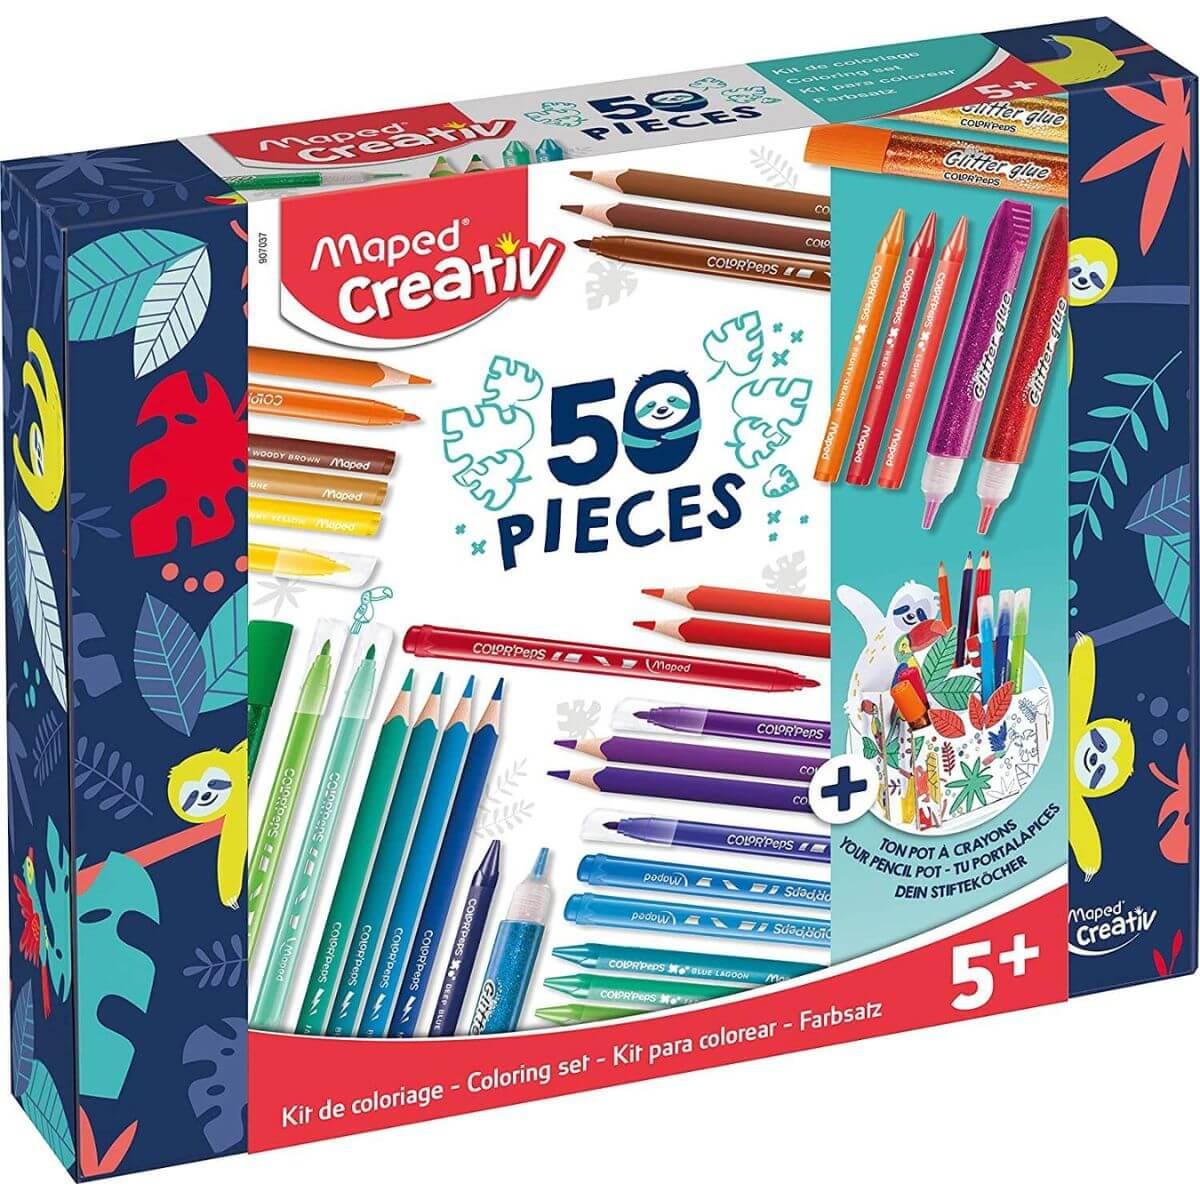 Maped Creativ 50 Piece Colouring Set